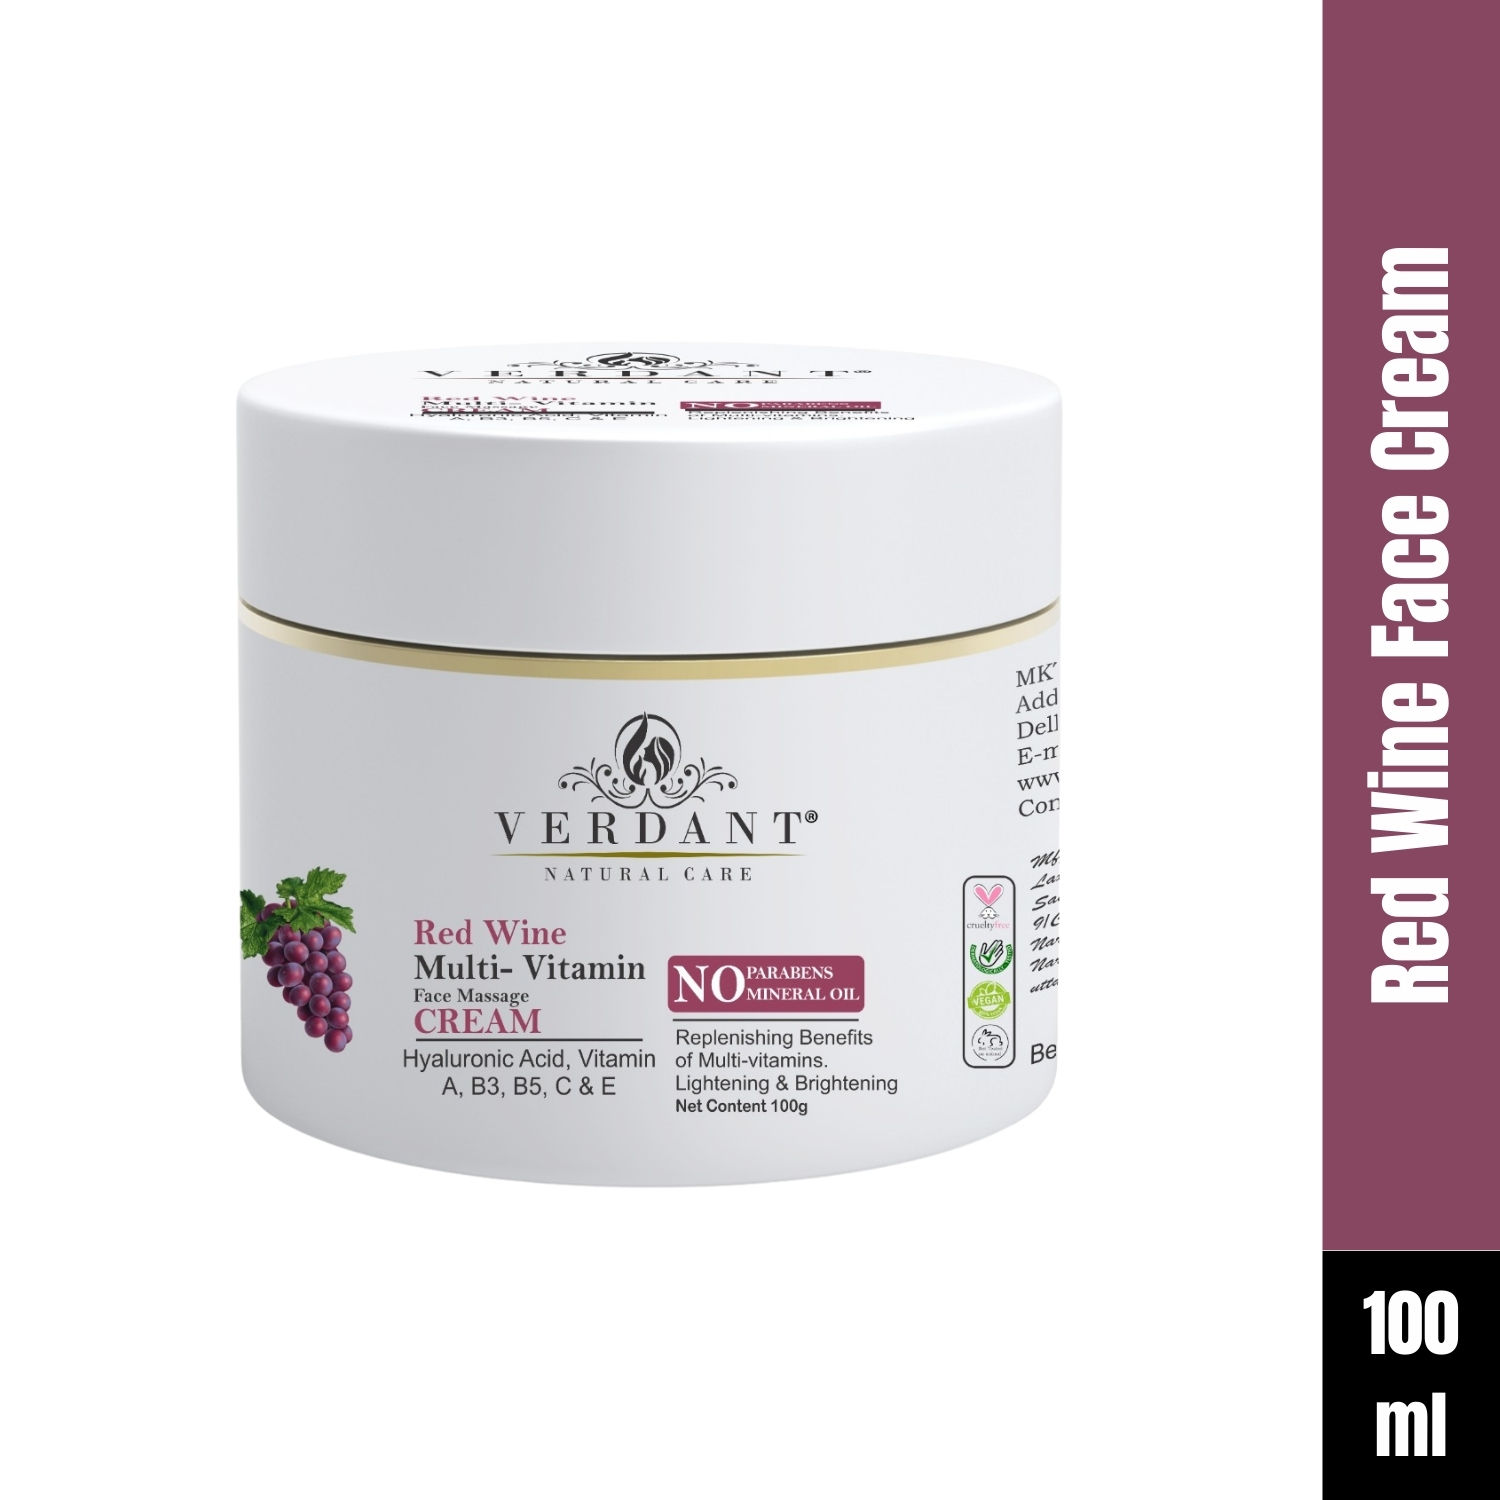 Buy Verdant Natural Care Brightening Red Wine Face Cream (100 ml) - Purplle